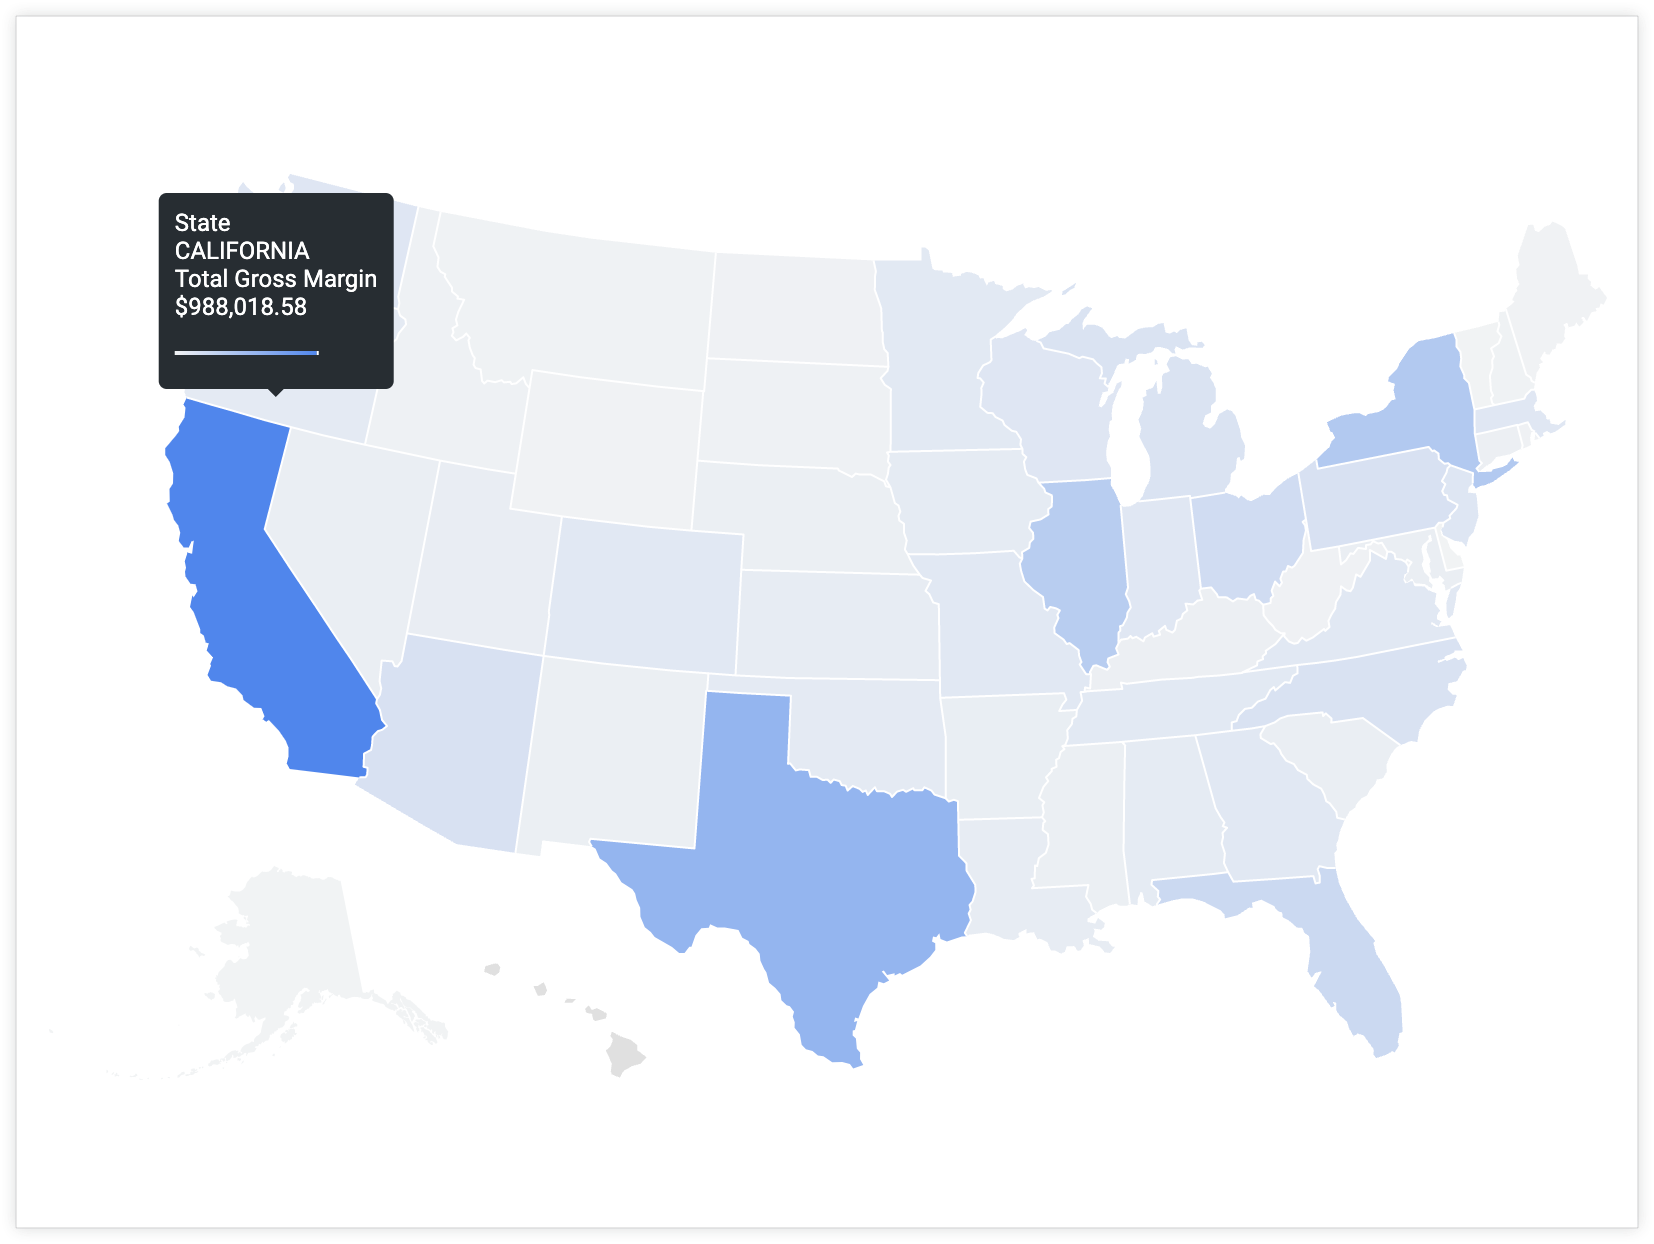 Ein Nutzer bewegt den Mauszeiger auf Kalifornien, um eine Kurzinfo mit dem Wert „Kalifornien“ für den Bundesstaat und dem Wert „Bruttomarge insgesamt“ von 988.018,58 $ anzuzeigen.